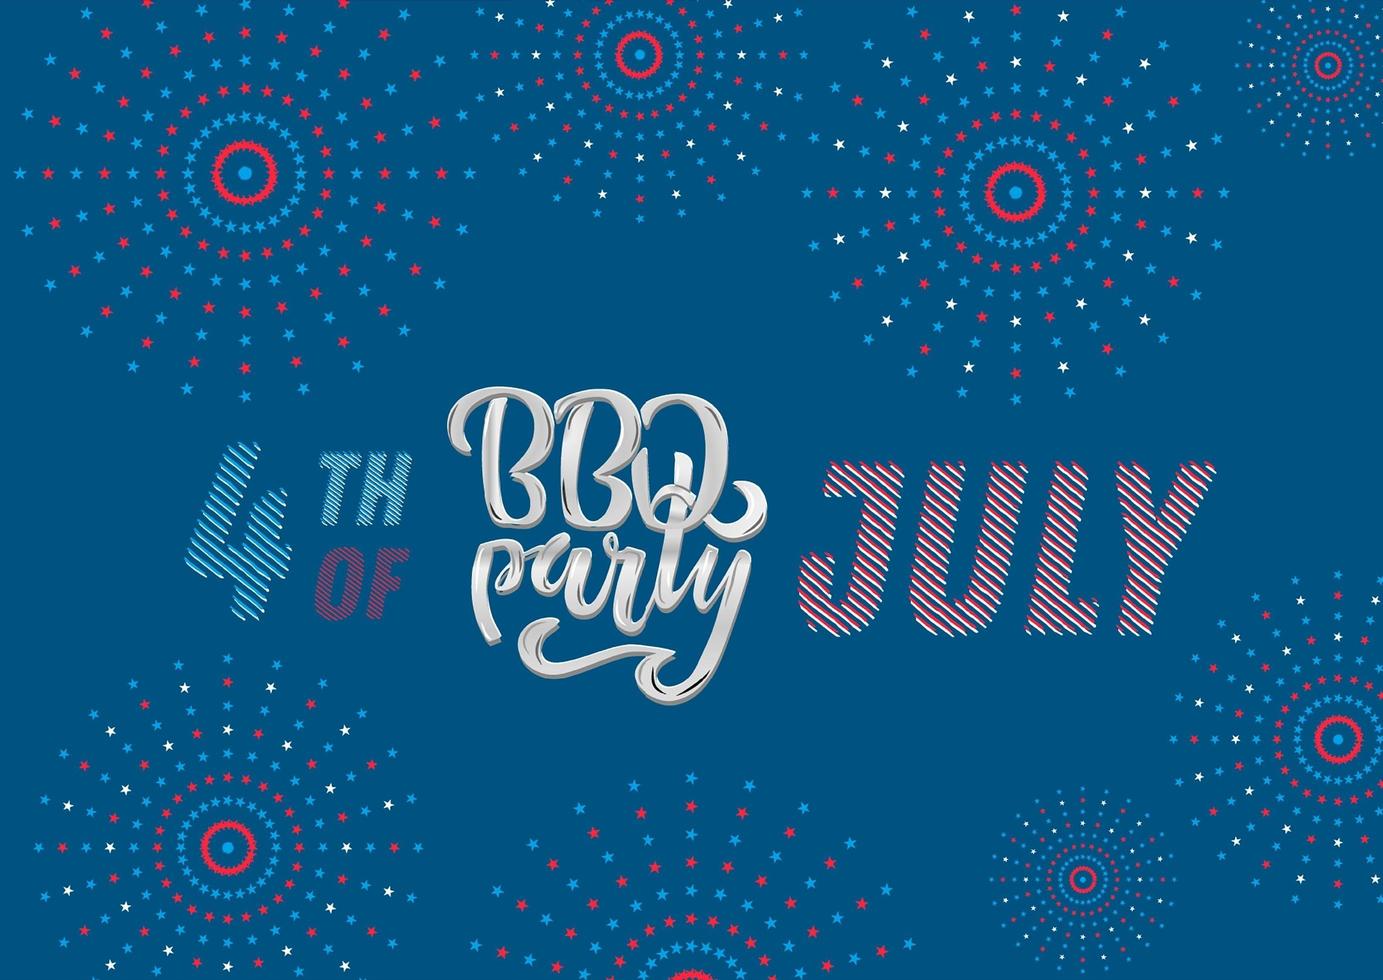 4 juli bbq party bokstäver inbjudan till amerikansk självständighetsdagen grill med 4 juli dekorationer stjärnor, flaggor, fyrverkerier på blå bakgrund. vektor handritad illustration.